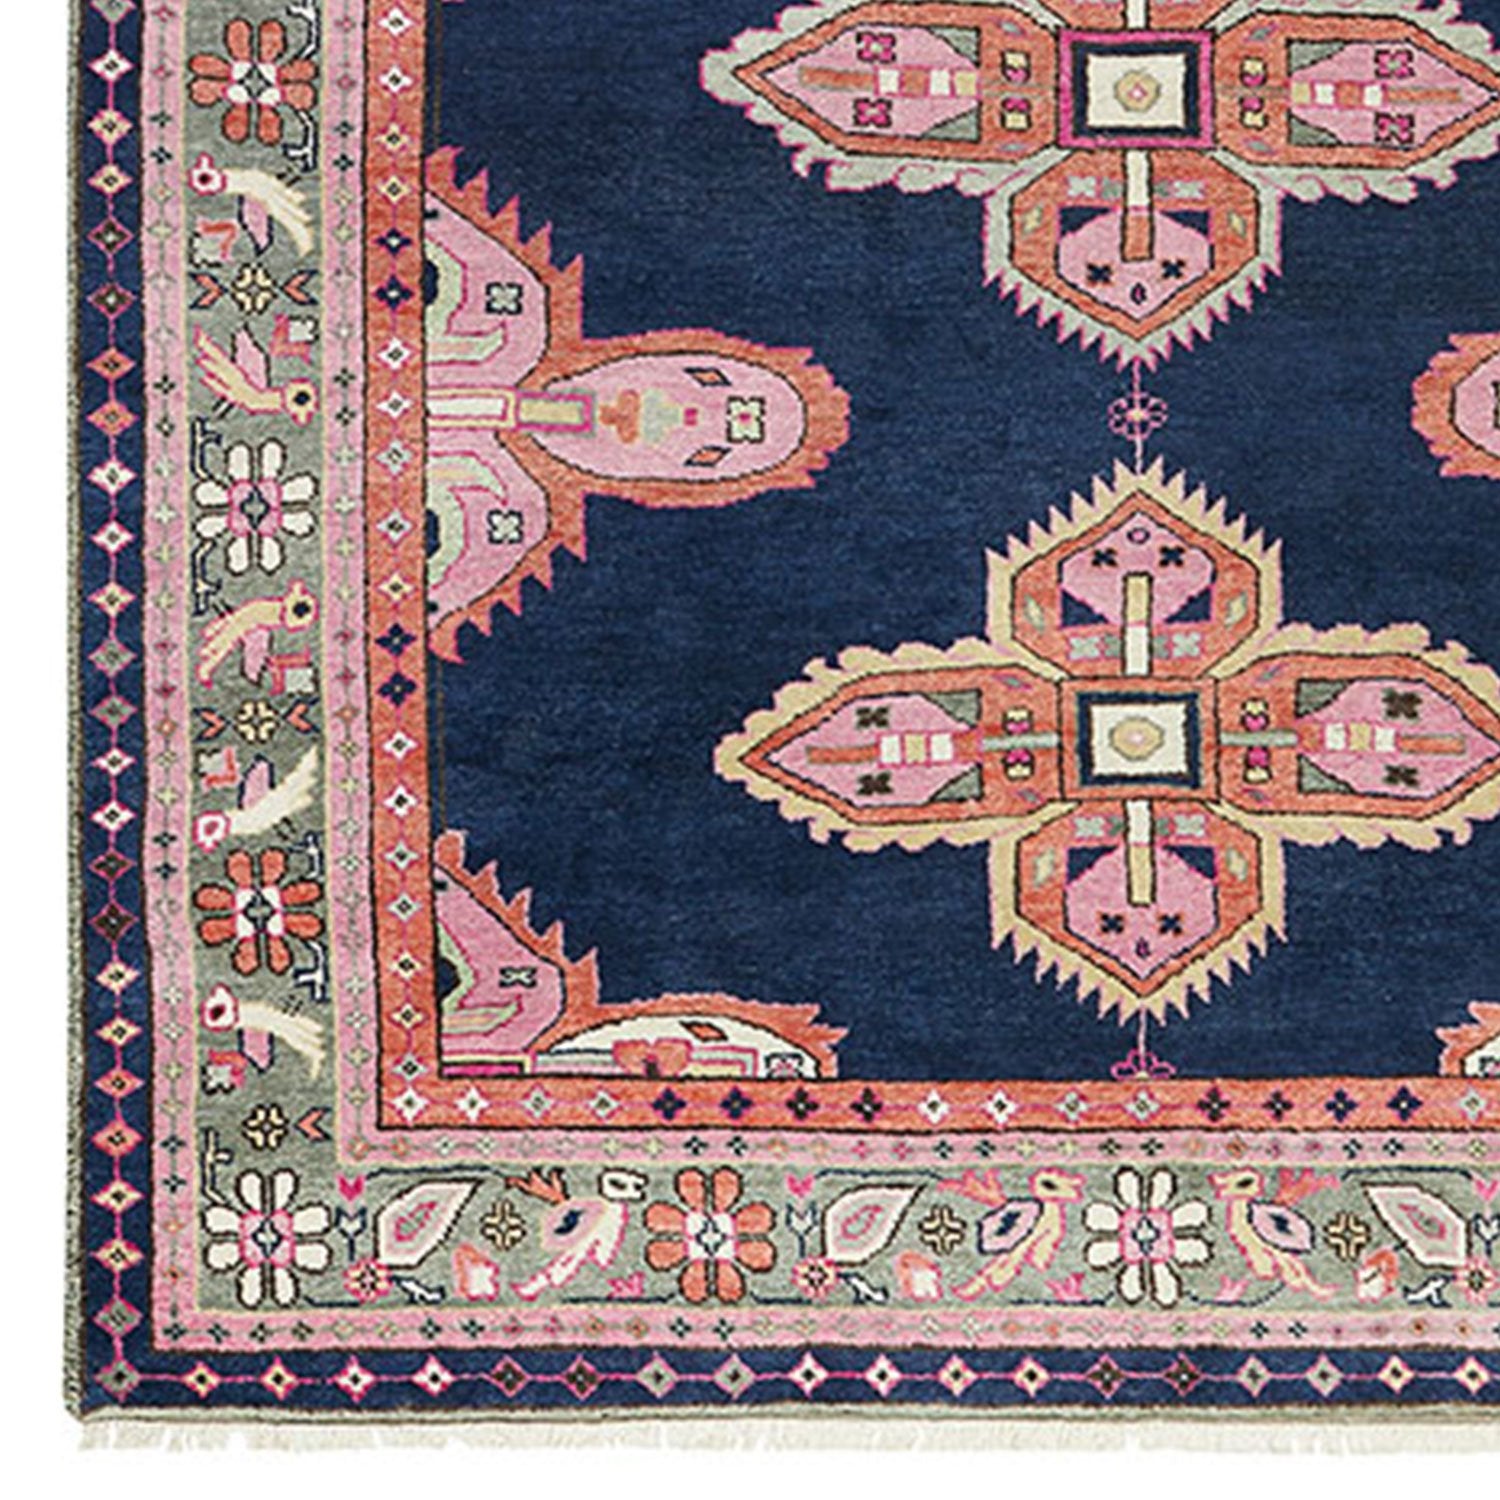 Vintage Persian Floral Pink Soft Area Rug